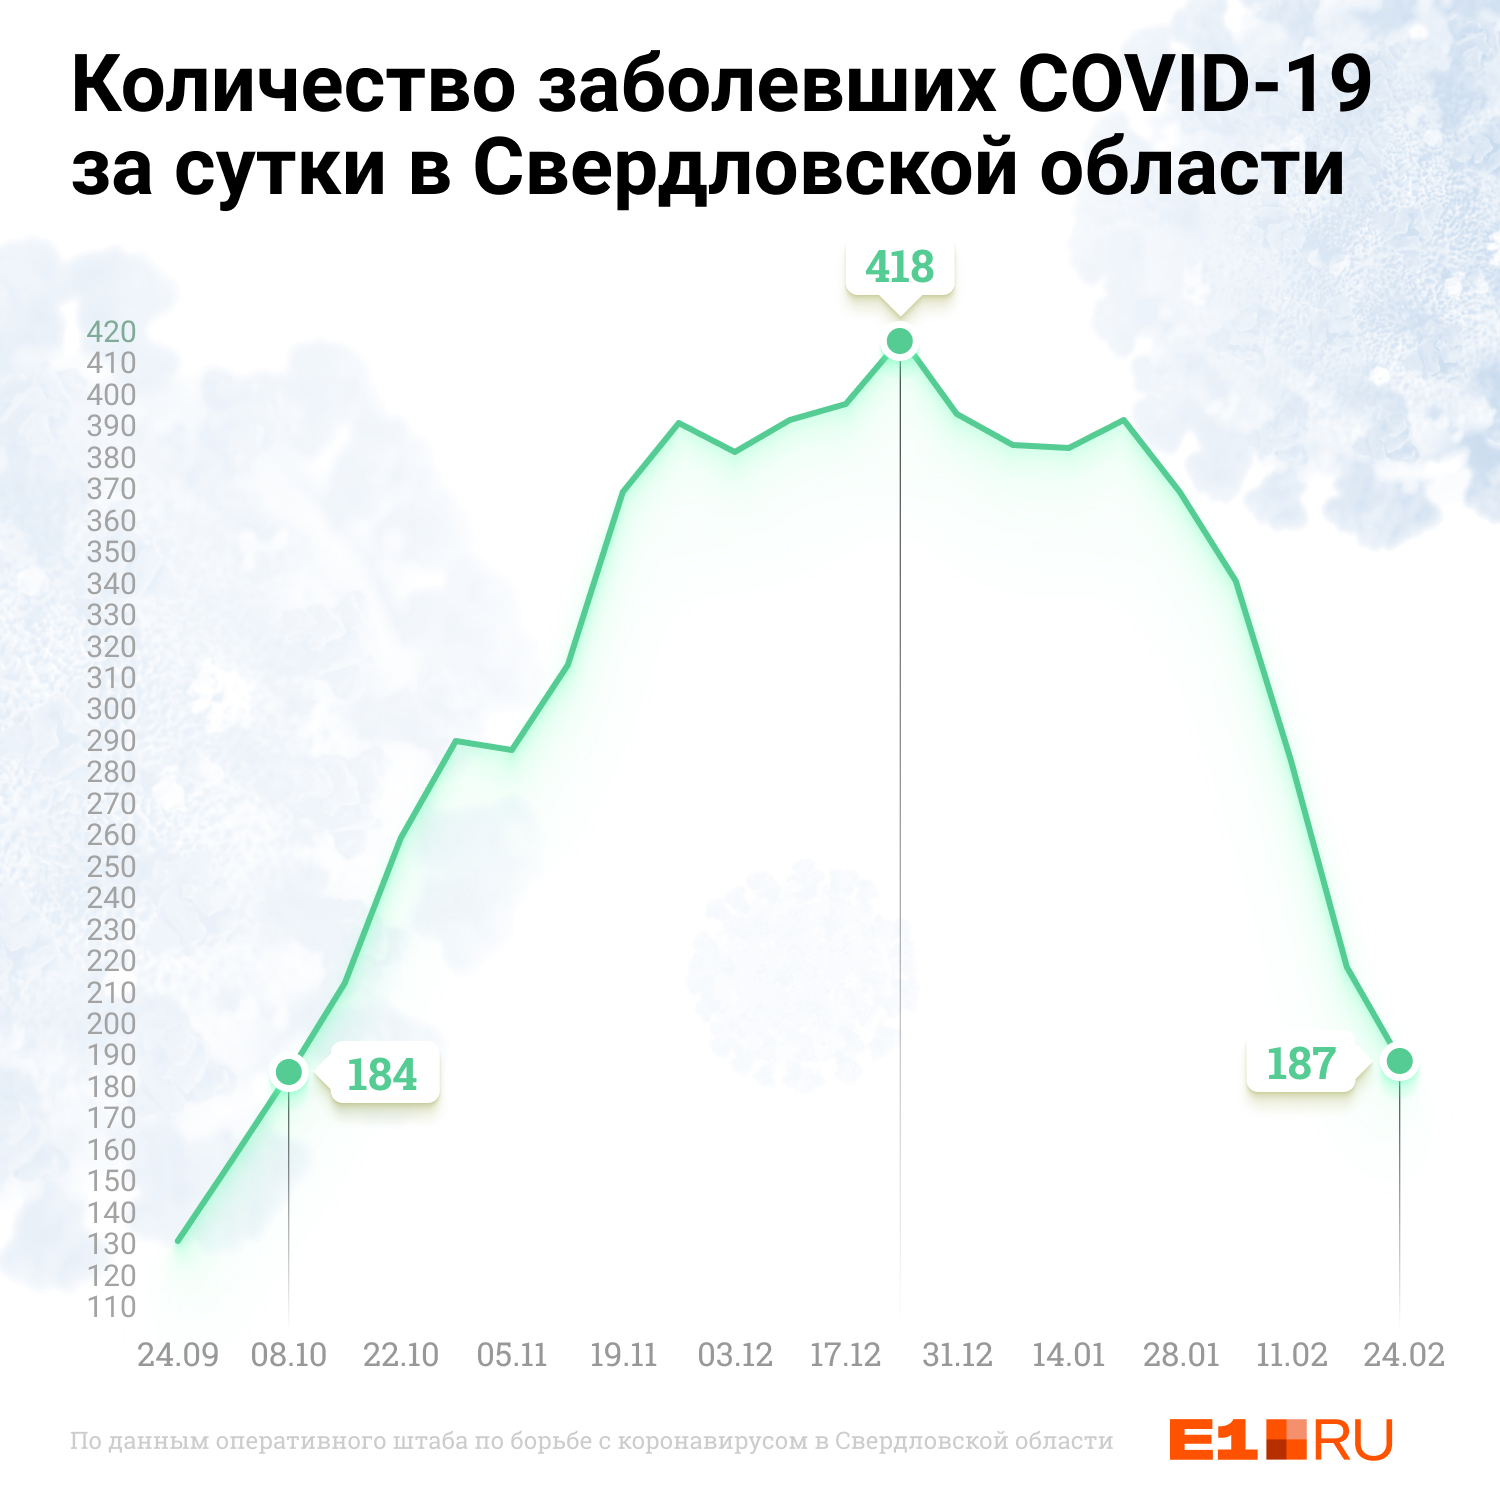 Сейчас заболеваемость коронавирусом в Свердловской области примерно такая же, какая была в октябре 2020-го. Врачи говорят, что это уверенный спад